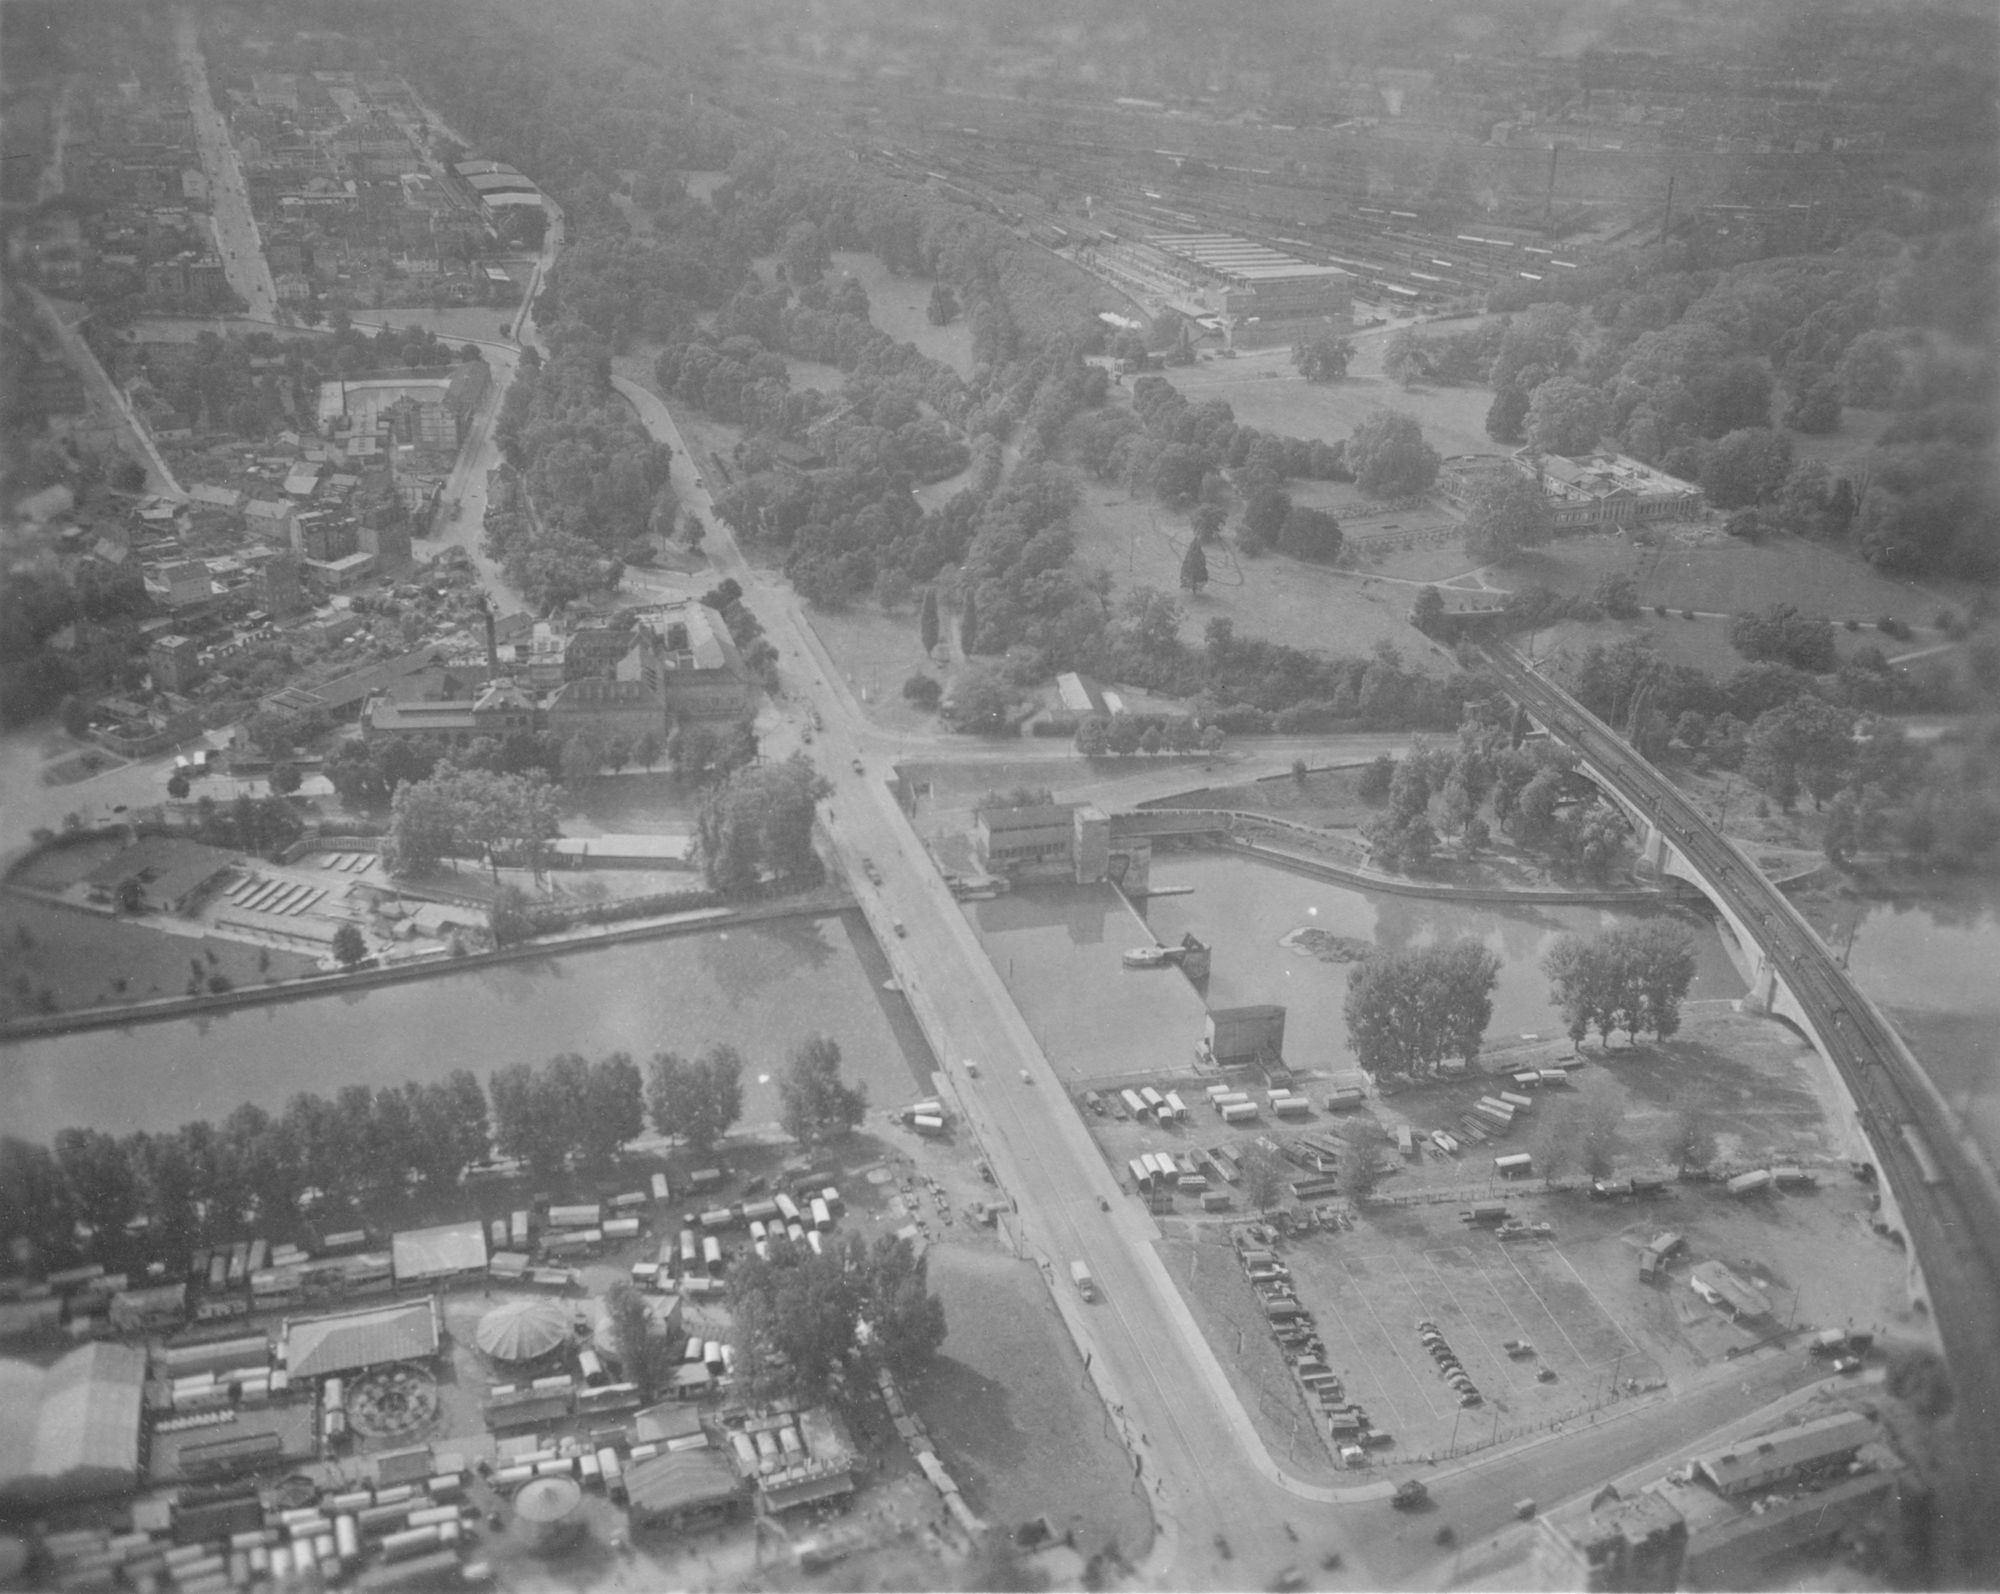 Luftaufnahme vom Neckar mit Stauwehr und Kraftwerk, König-Karls-Brücke und Rosenstein - Eisenbahnbrücke. Im Hintergrund Rosensteinpark mit Schloß, Cannstatter Wasen.